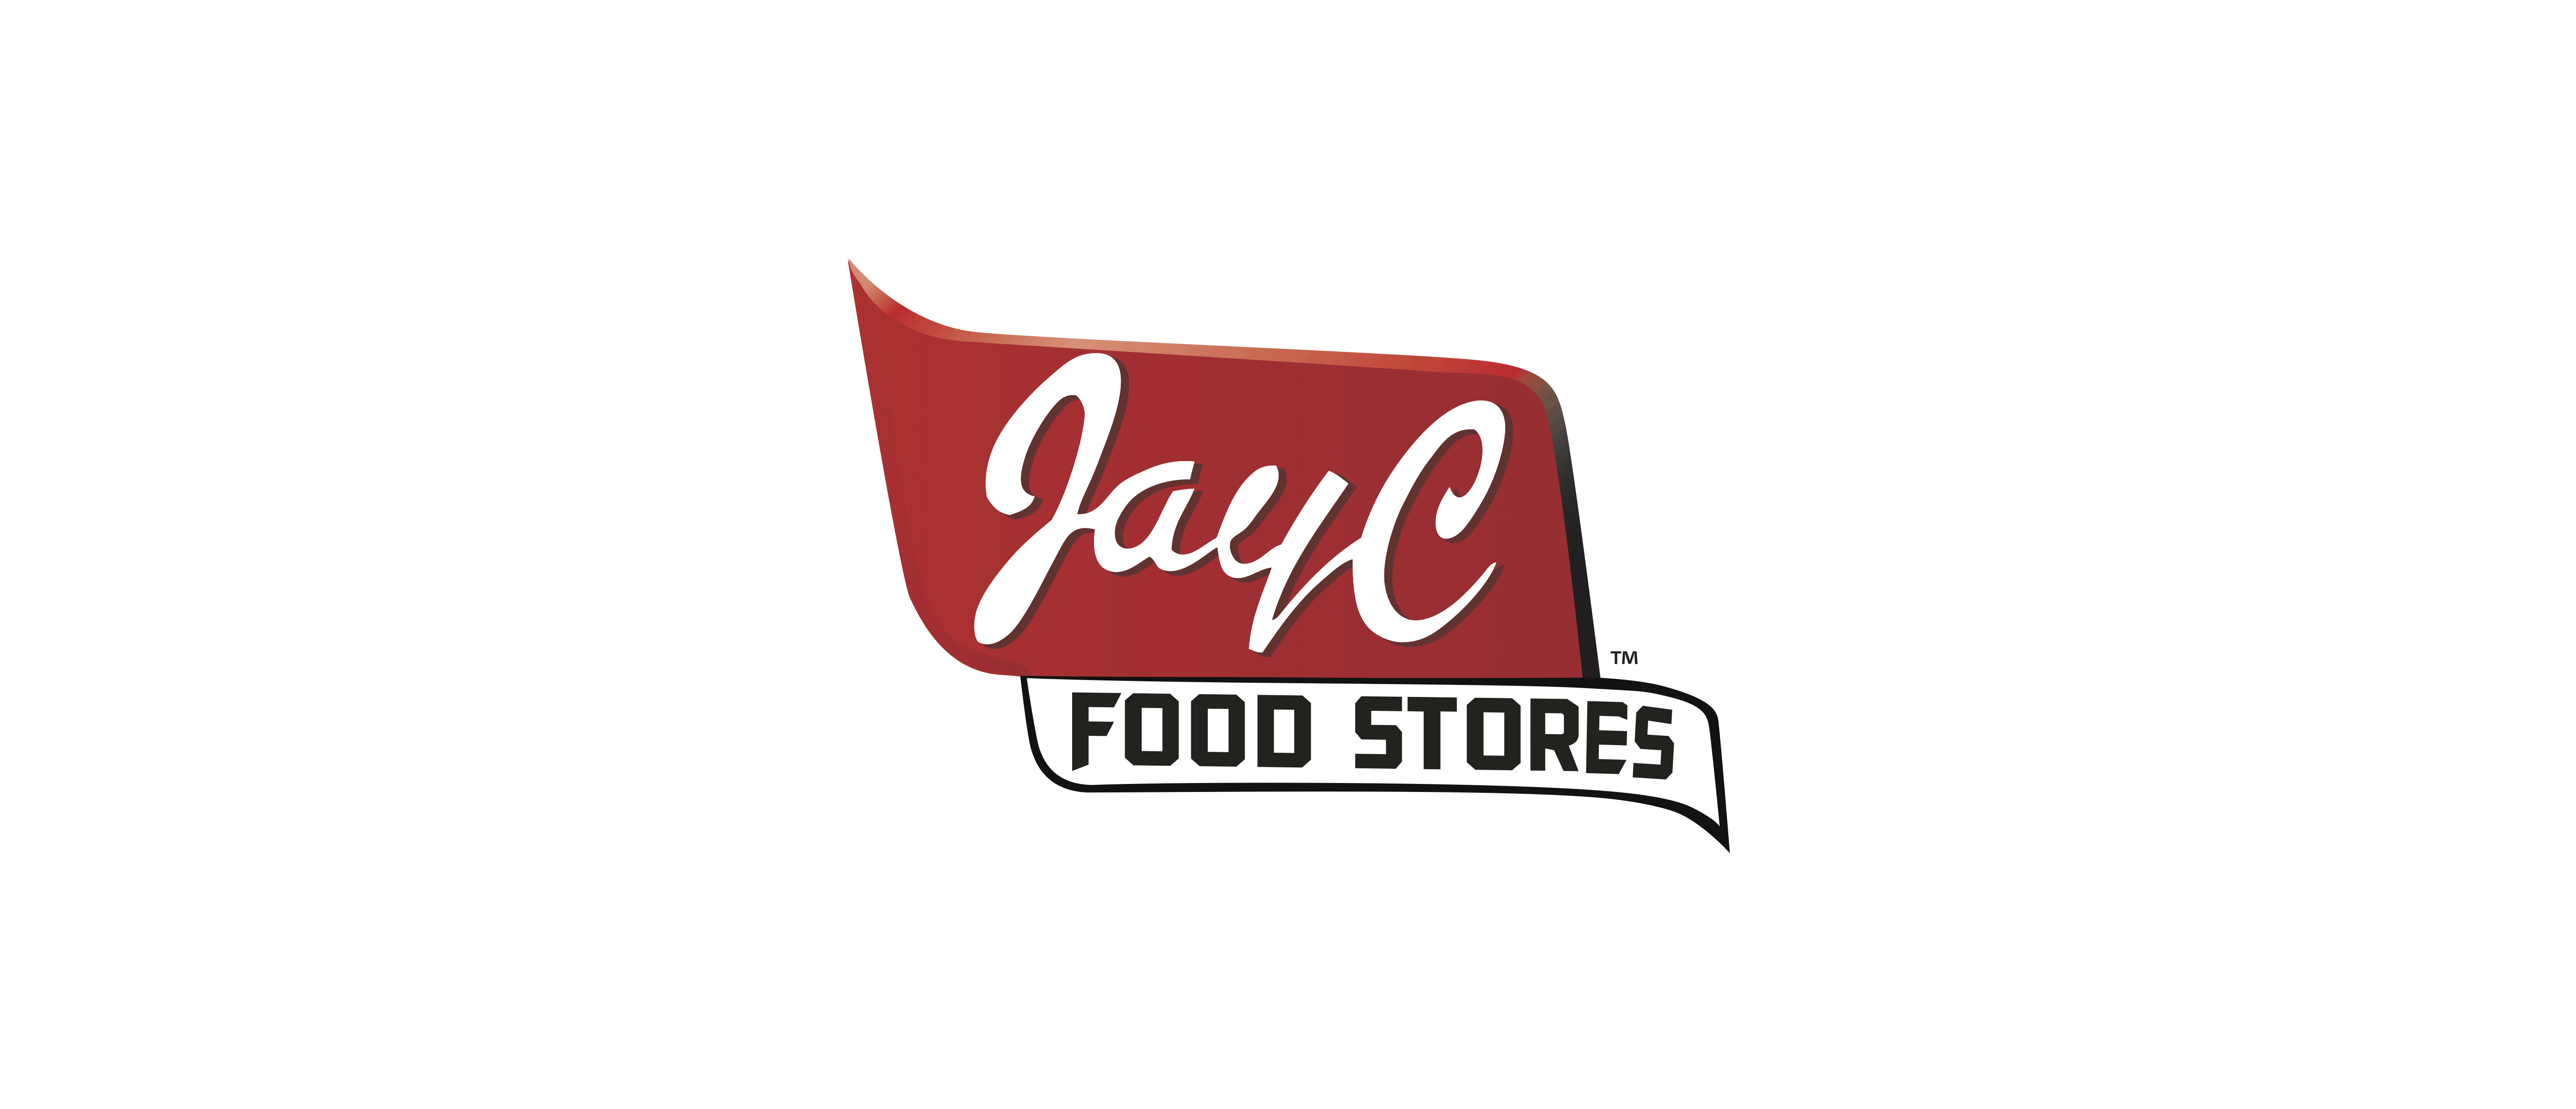 Jay-C